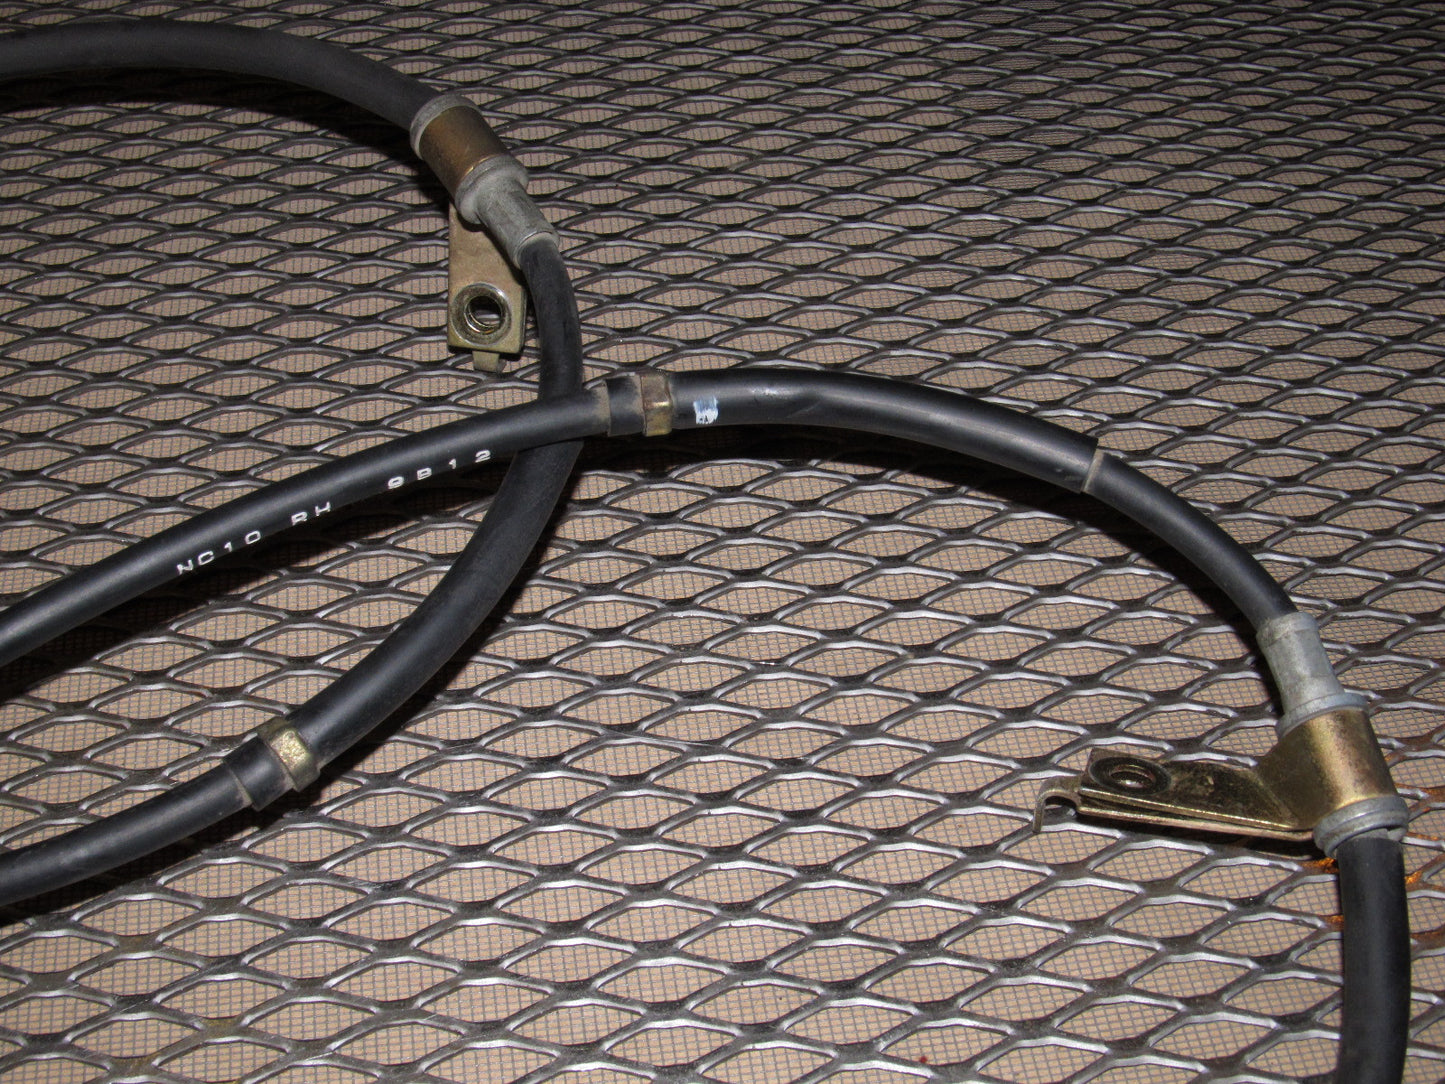 99 00 Mazda Miata OEM Parking Brake Cable